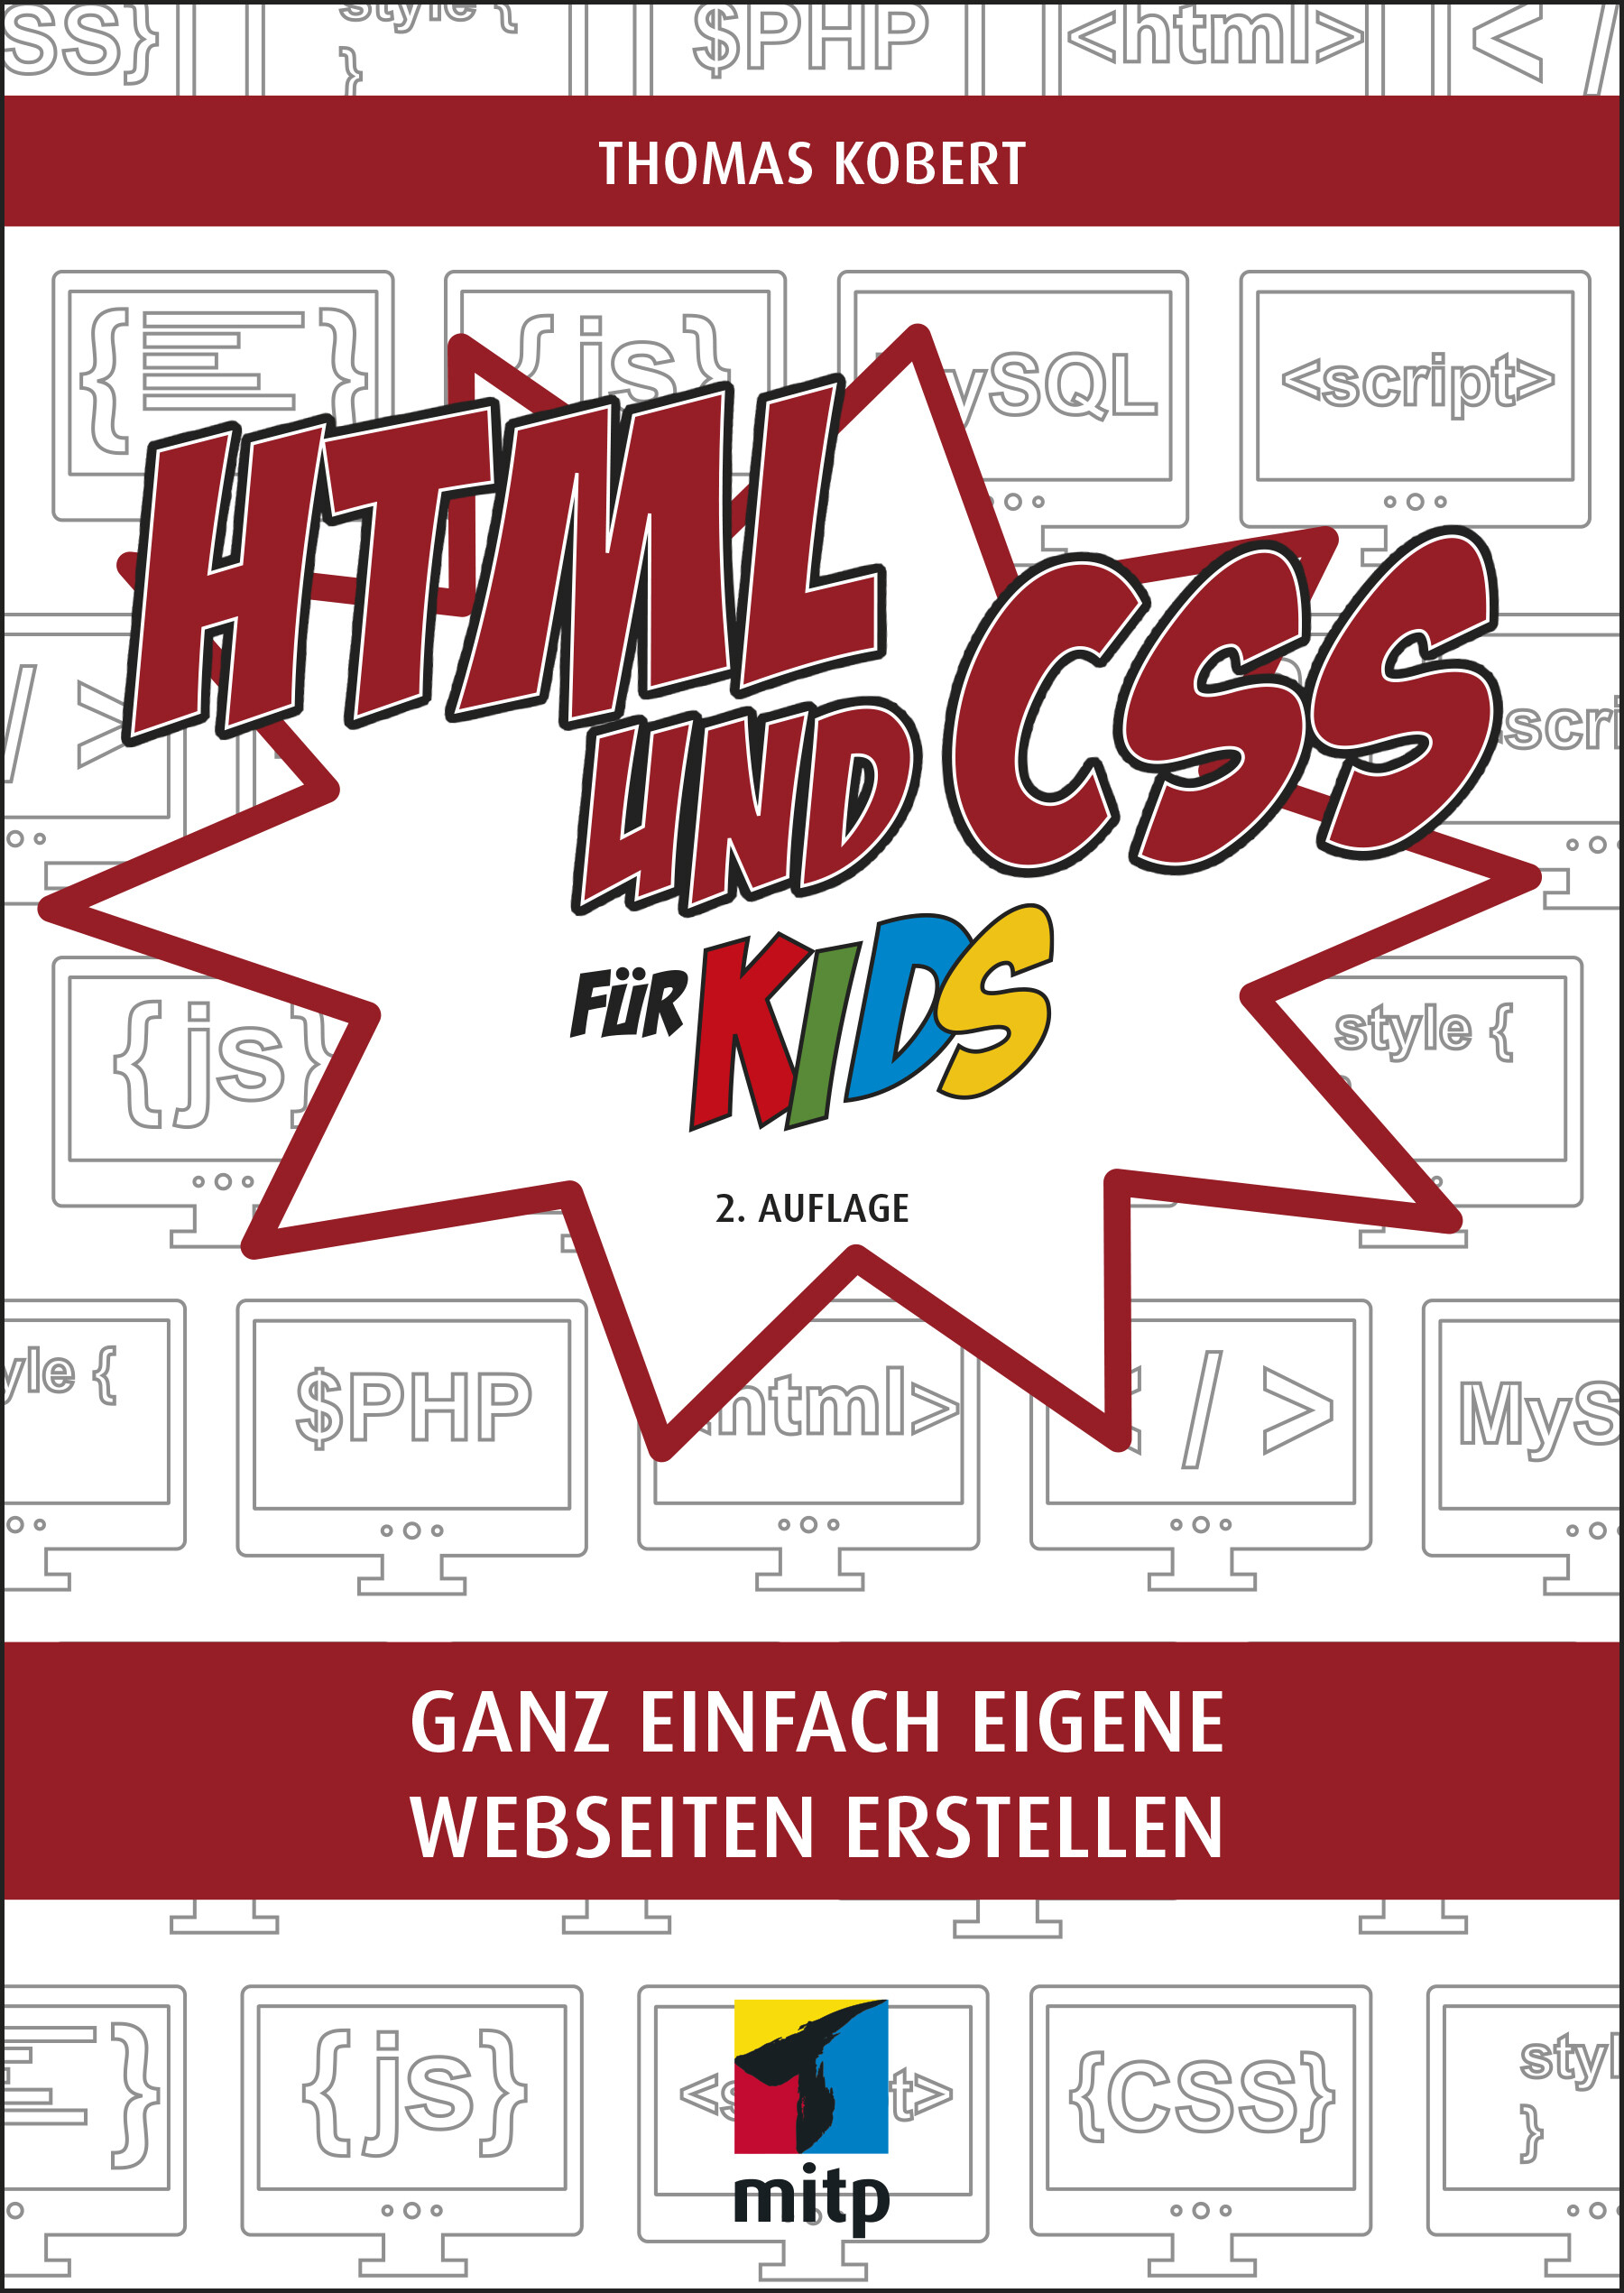 HTML und CSS für Kids